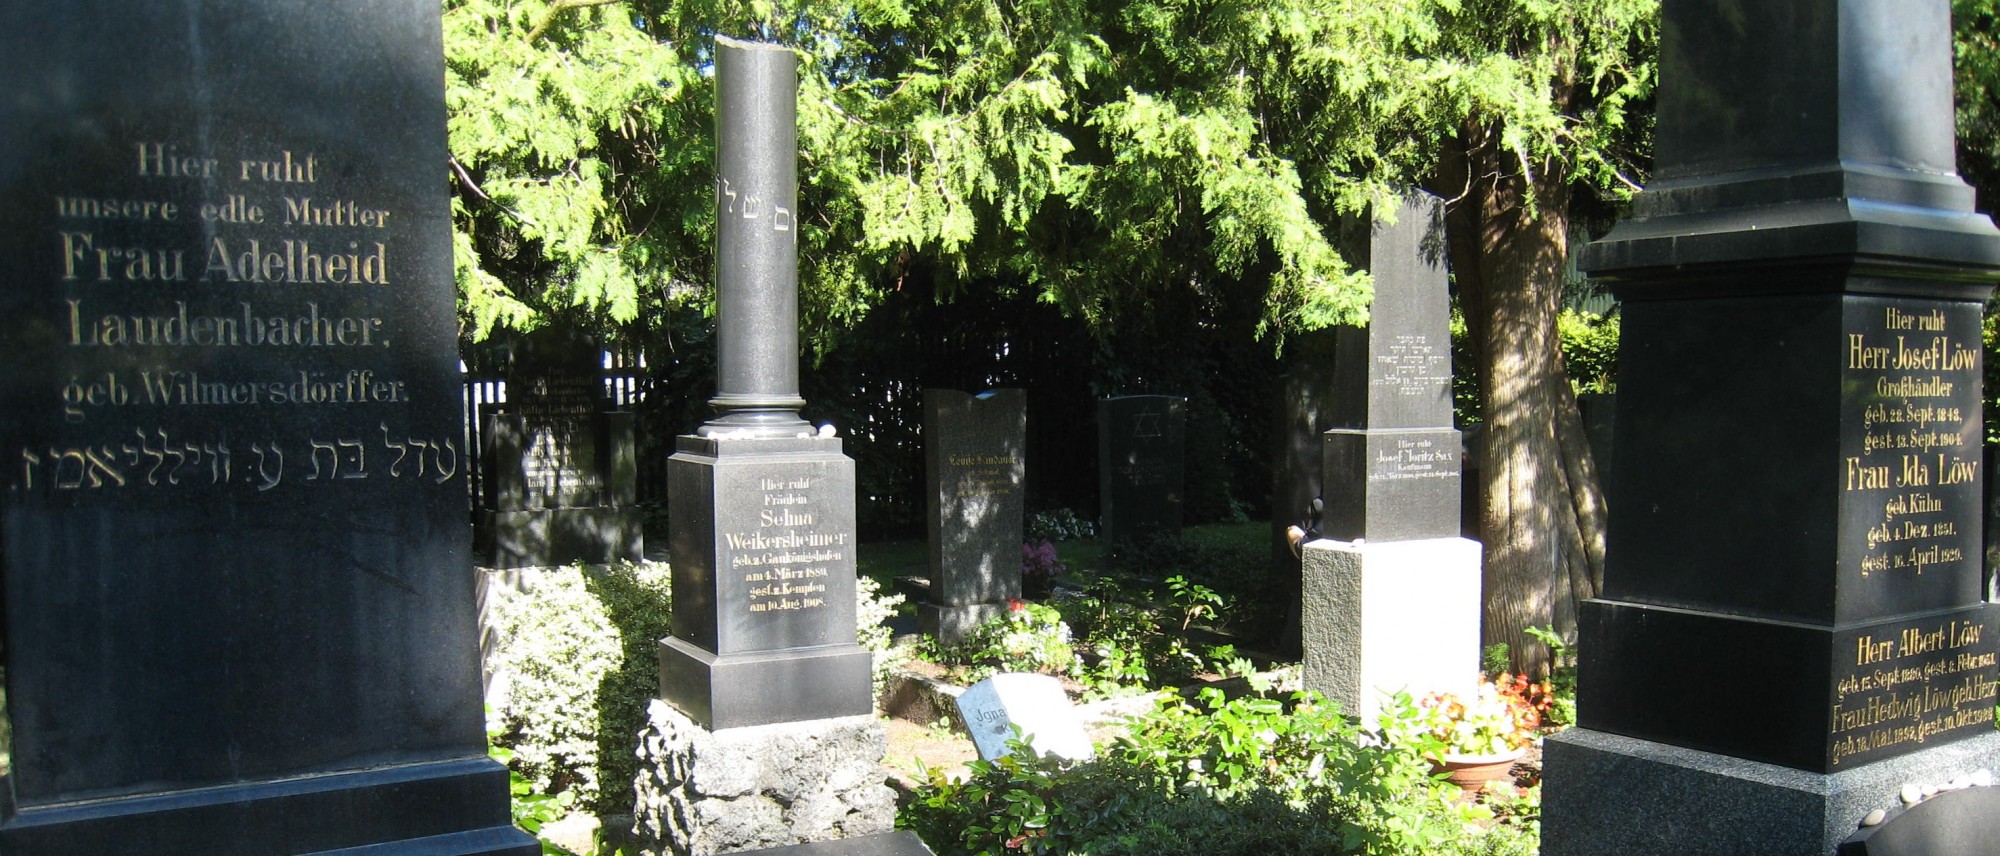 Grabsteine mit hebräischen und deutschen Inschriften auf dem Friedhof in Kempten. Führt zur Unterseite &quot;Kempten&quot;.